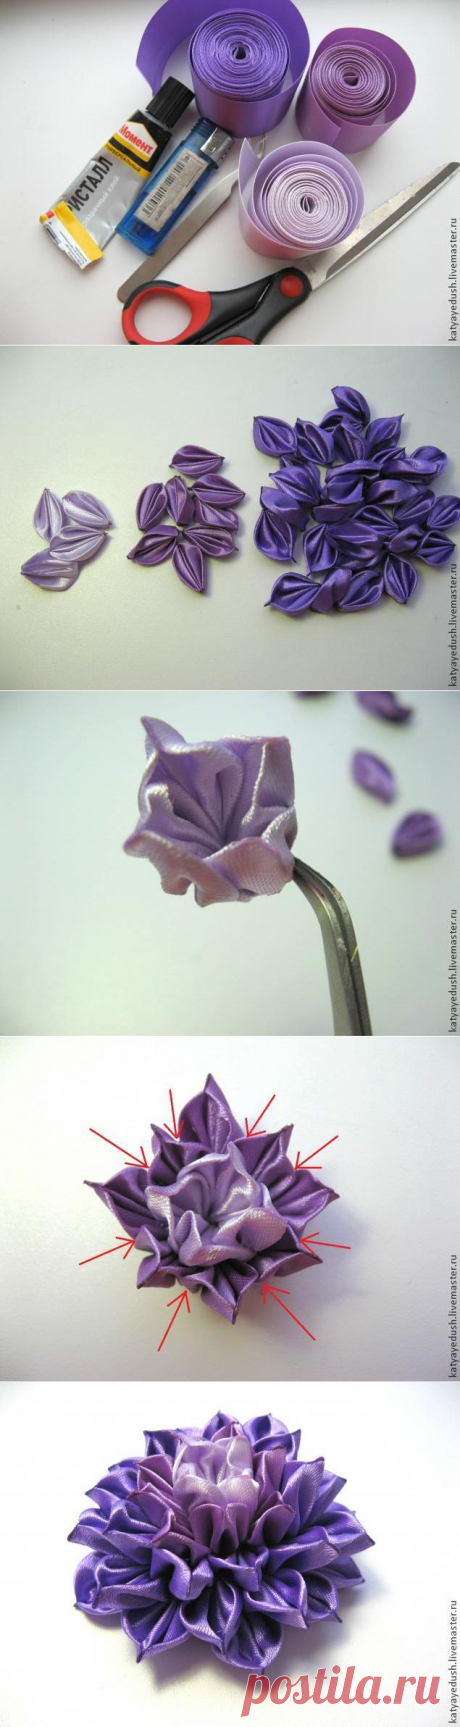 МК цветка в технике канзаши. Автор Катя Едуш |